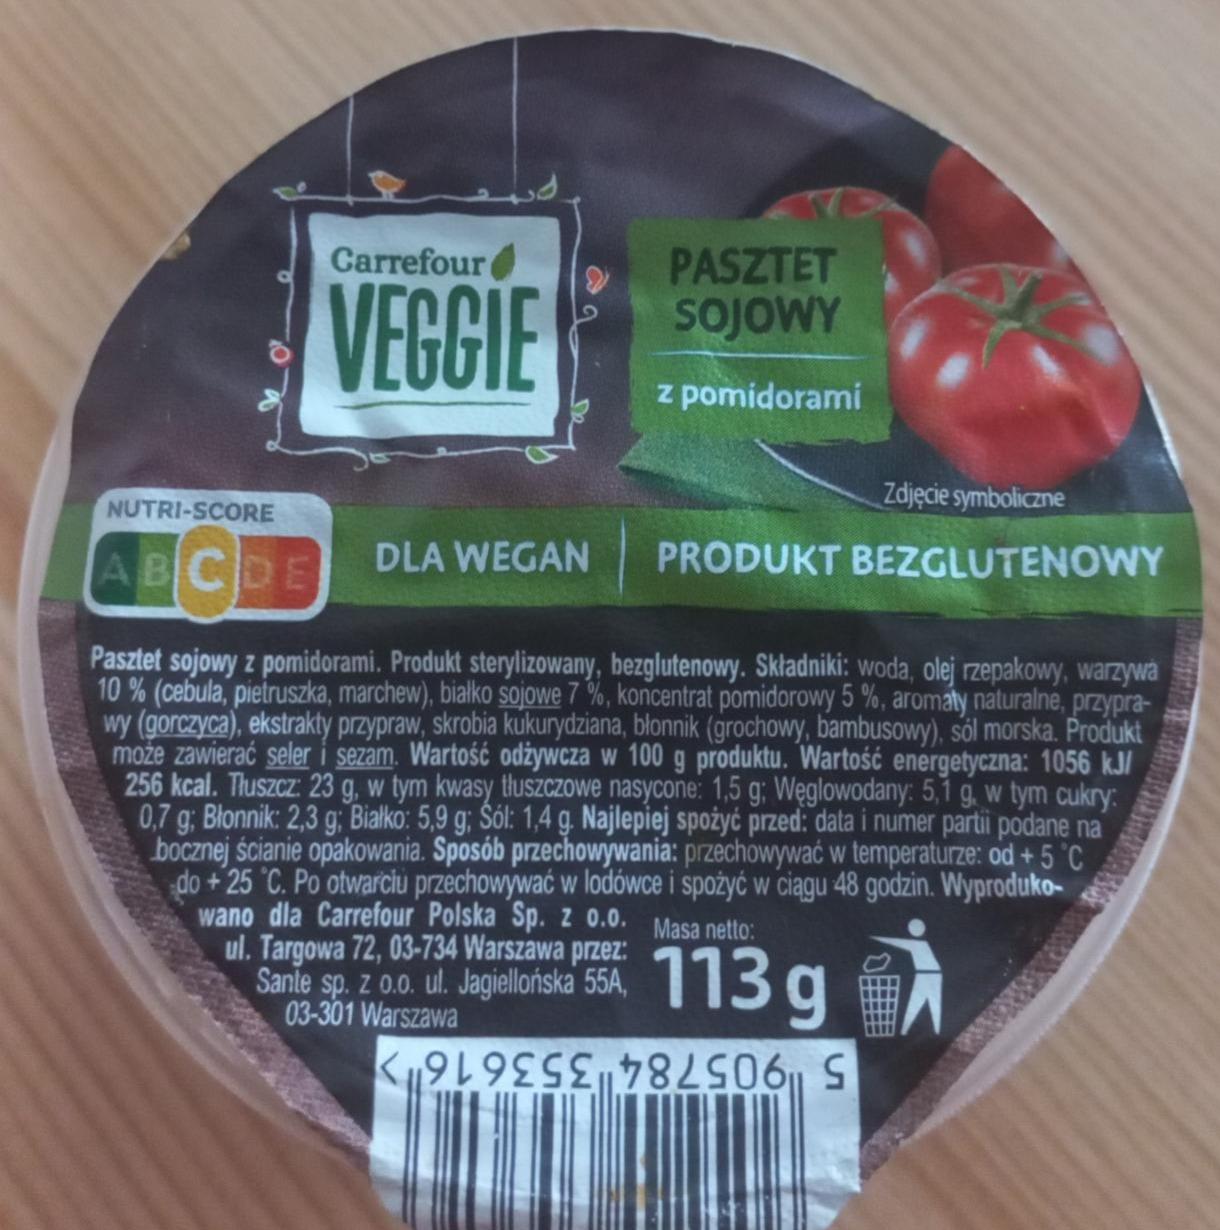 Fotografie - Pasztet Sojowy z pomidorami Carrefour Veggie